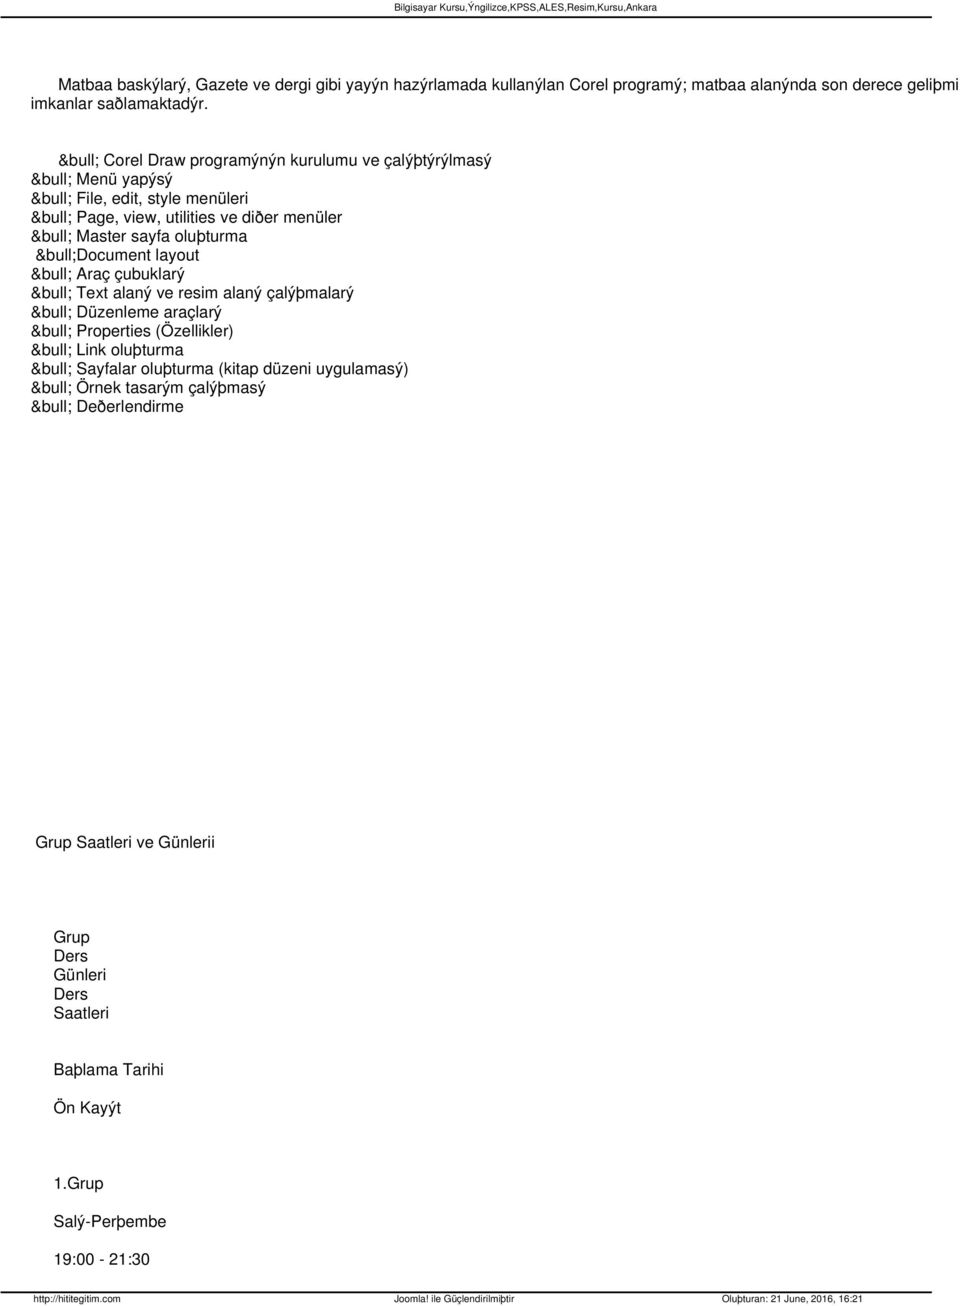 Document layout Araç çubuklarý Text alaný ve resim alaný çalýþmalarý Düzenleme araçlarý Properties (Özellikler) Link oluþturma Sayfalar oluþturma (kitap